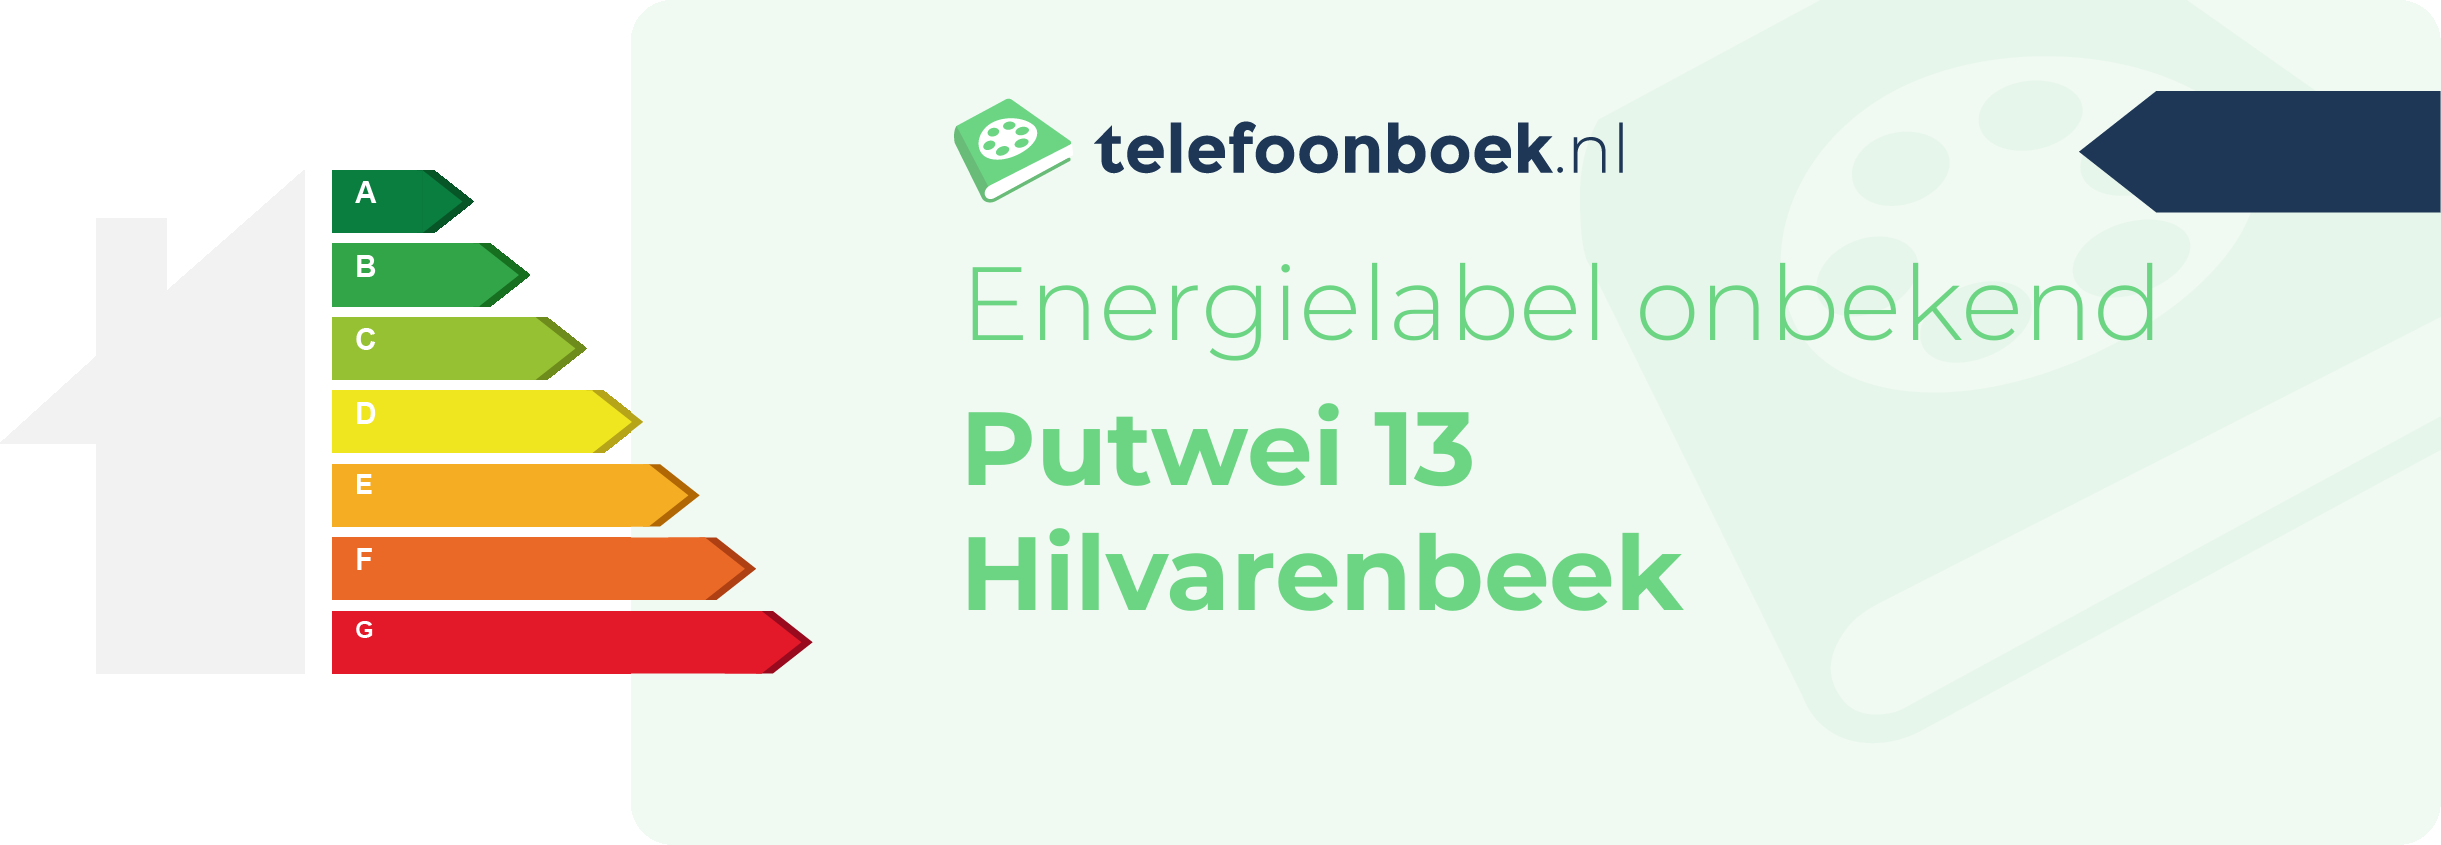 Energielabel Putwei 13 Hilvarenbeek